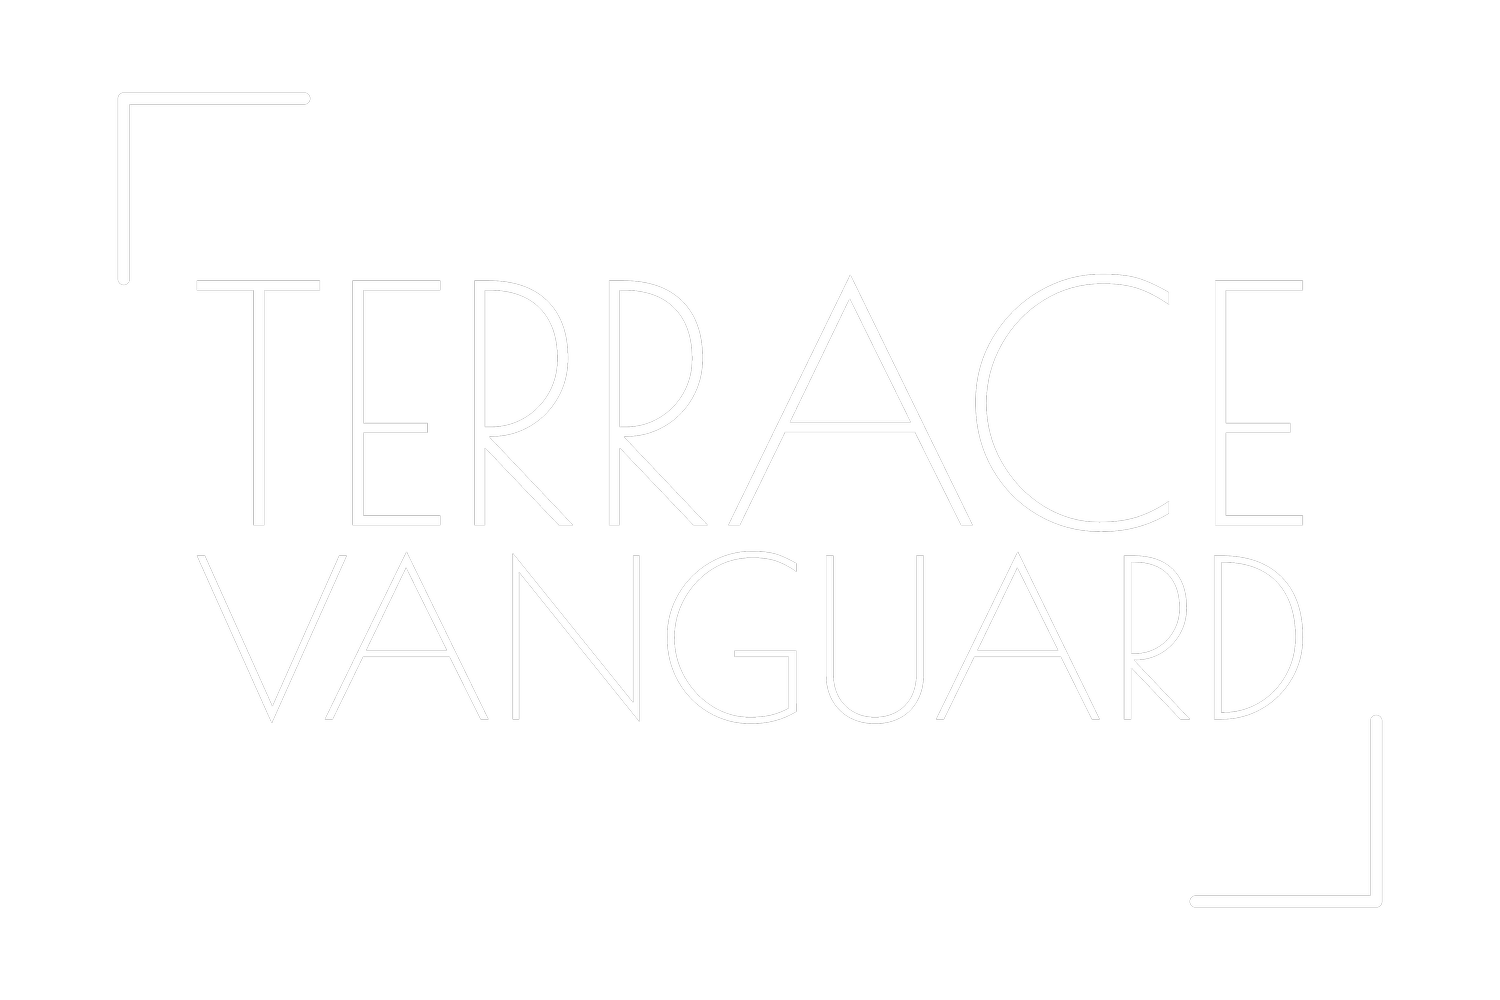 Terrace Vanguard: Executive Search &amp; Talent Acquisition